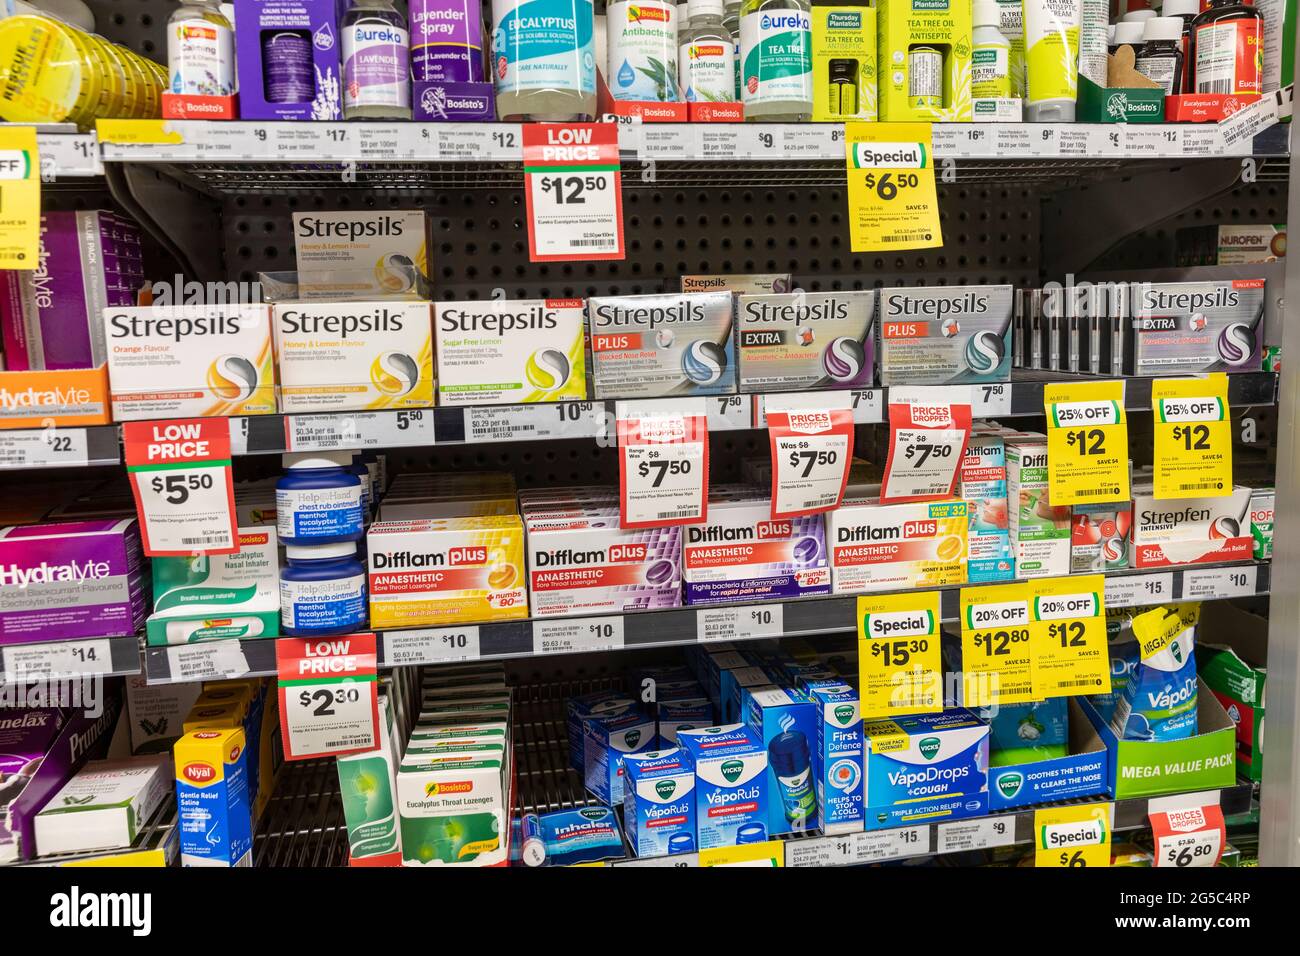 Strepsillen und difflam-Lutschtabletten und Medikamente zum Verkauf in  einem Supermarktregal in Australien Stockfotografie - Alamy